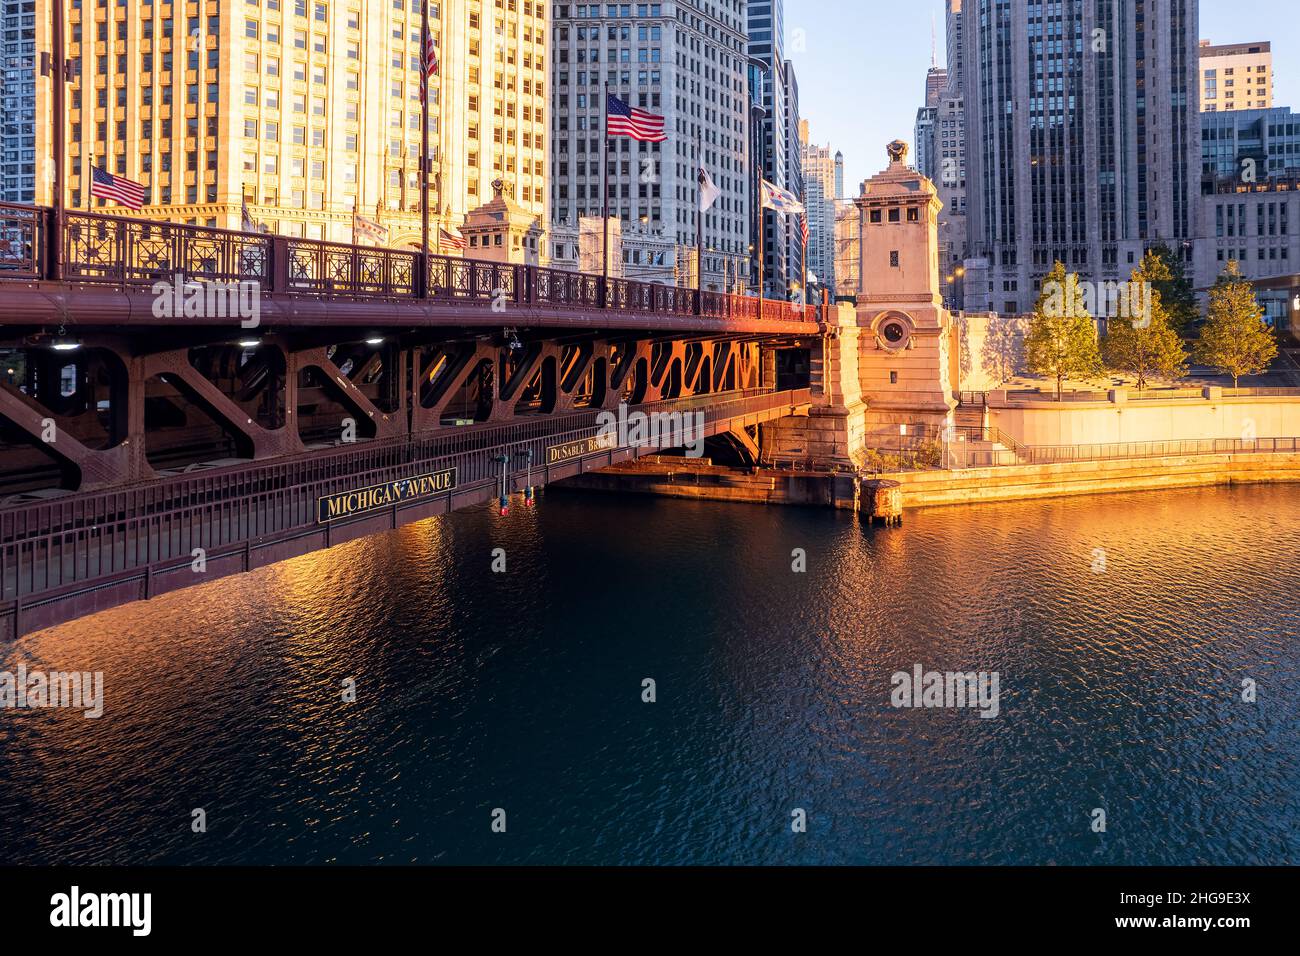 Downtown cityscape and Michigan Avenue bridge over Chicago river at sunrise, Chicago, Illinois, USA Stock Photo